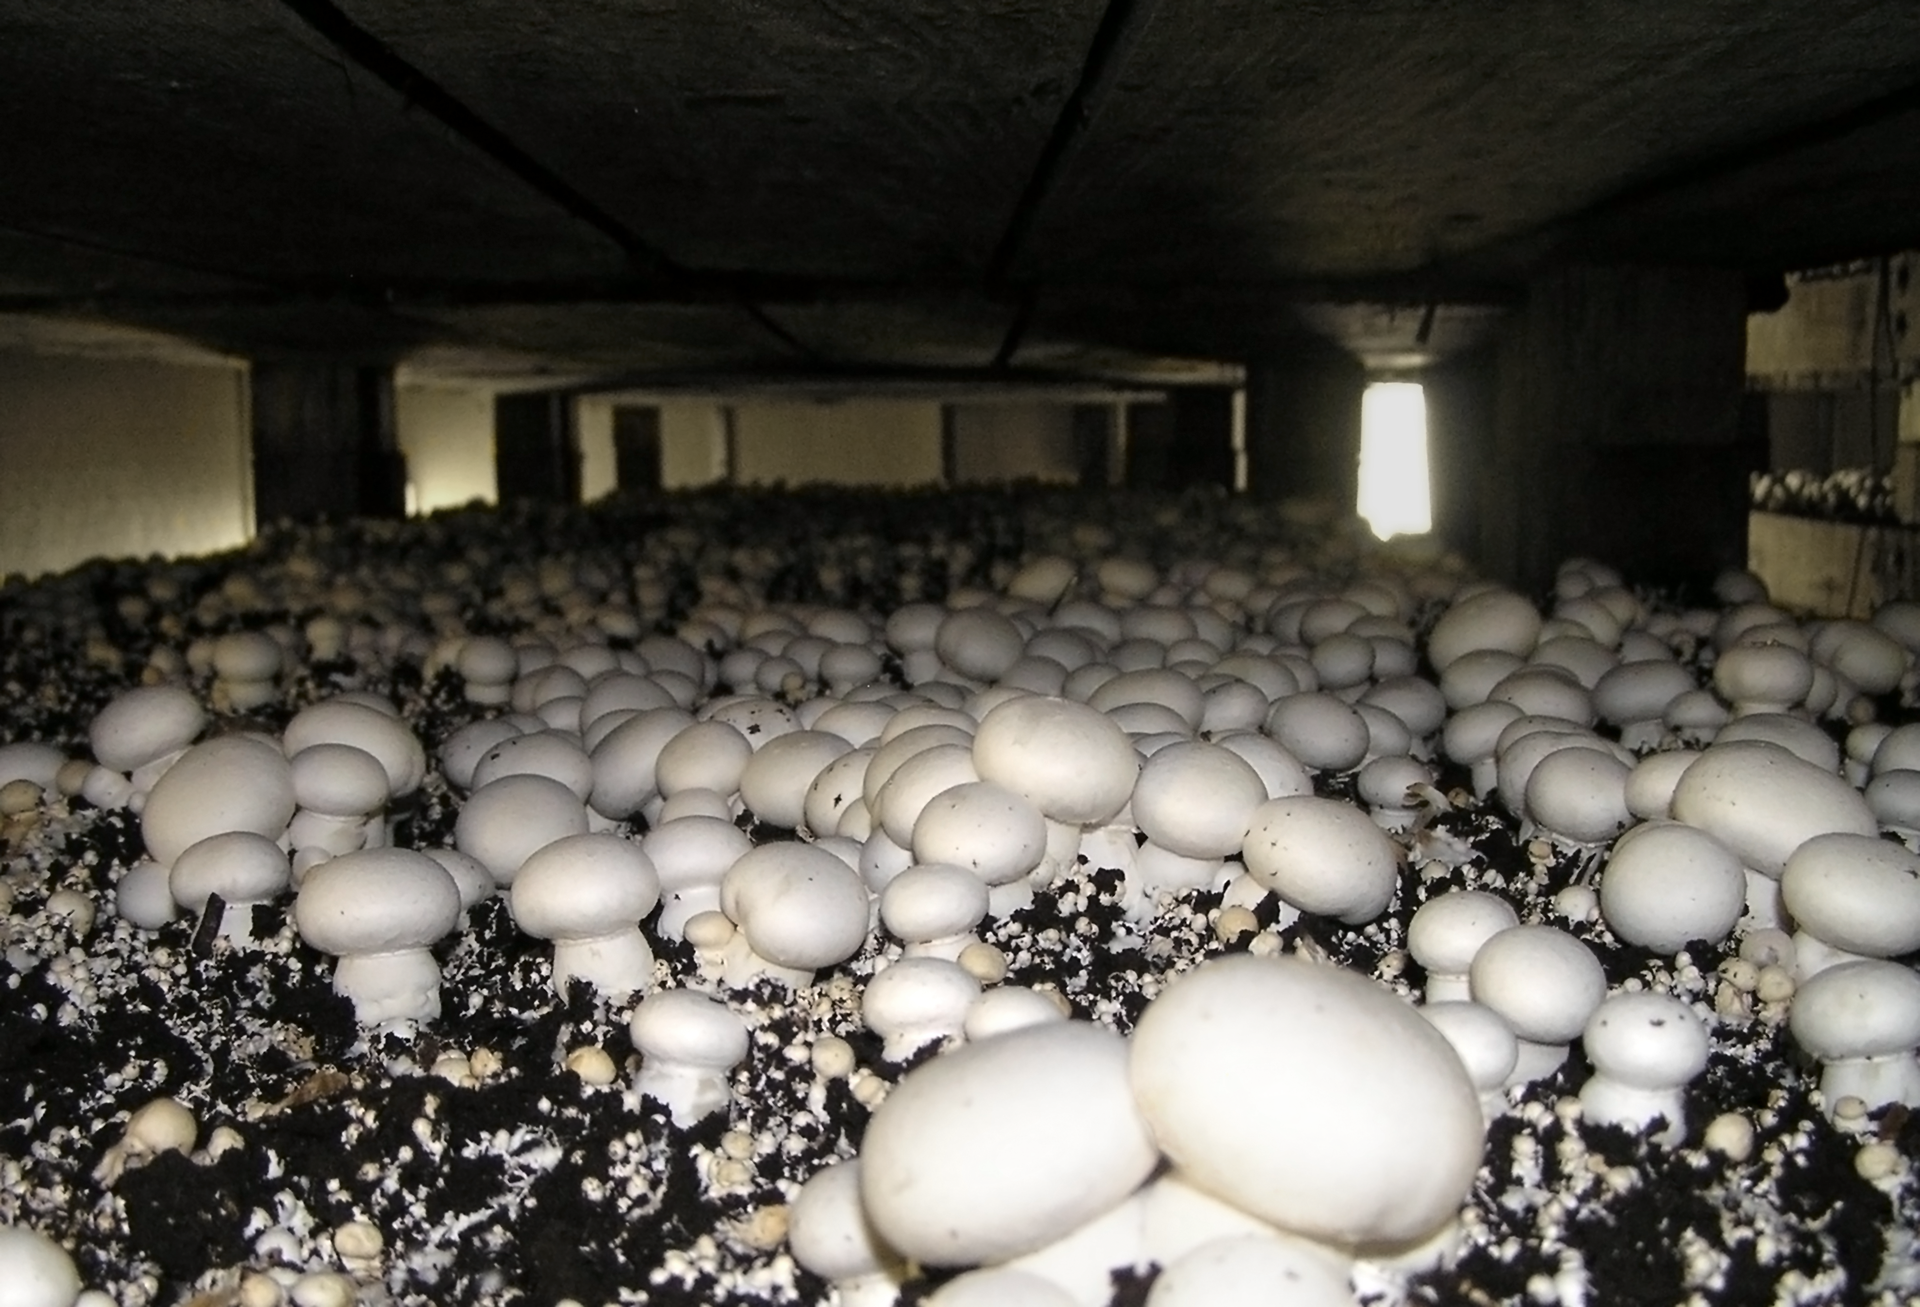 Fotografia przedstawia wnętrze pieczarkarni, czyli pomieszczenia, w którym hoduje się pieczarki. Białe grzybki różnej wielkości wyrastają z czarnego podłoża. W pomieszczeniu jest niewiele światła, wpadającego głównie przez drzwi z tyłu.